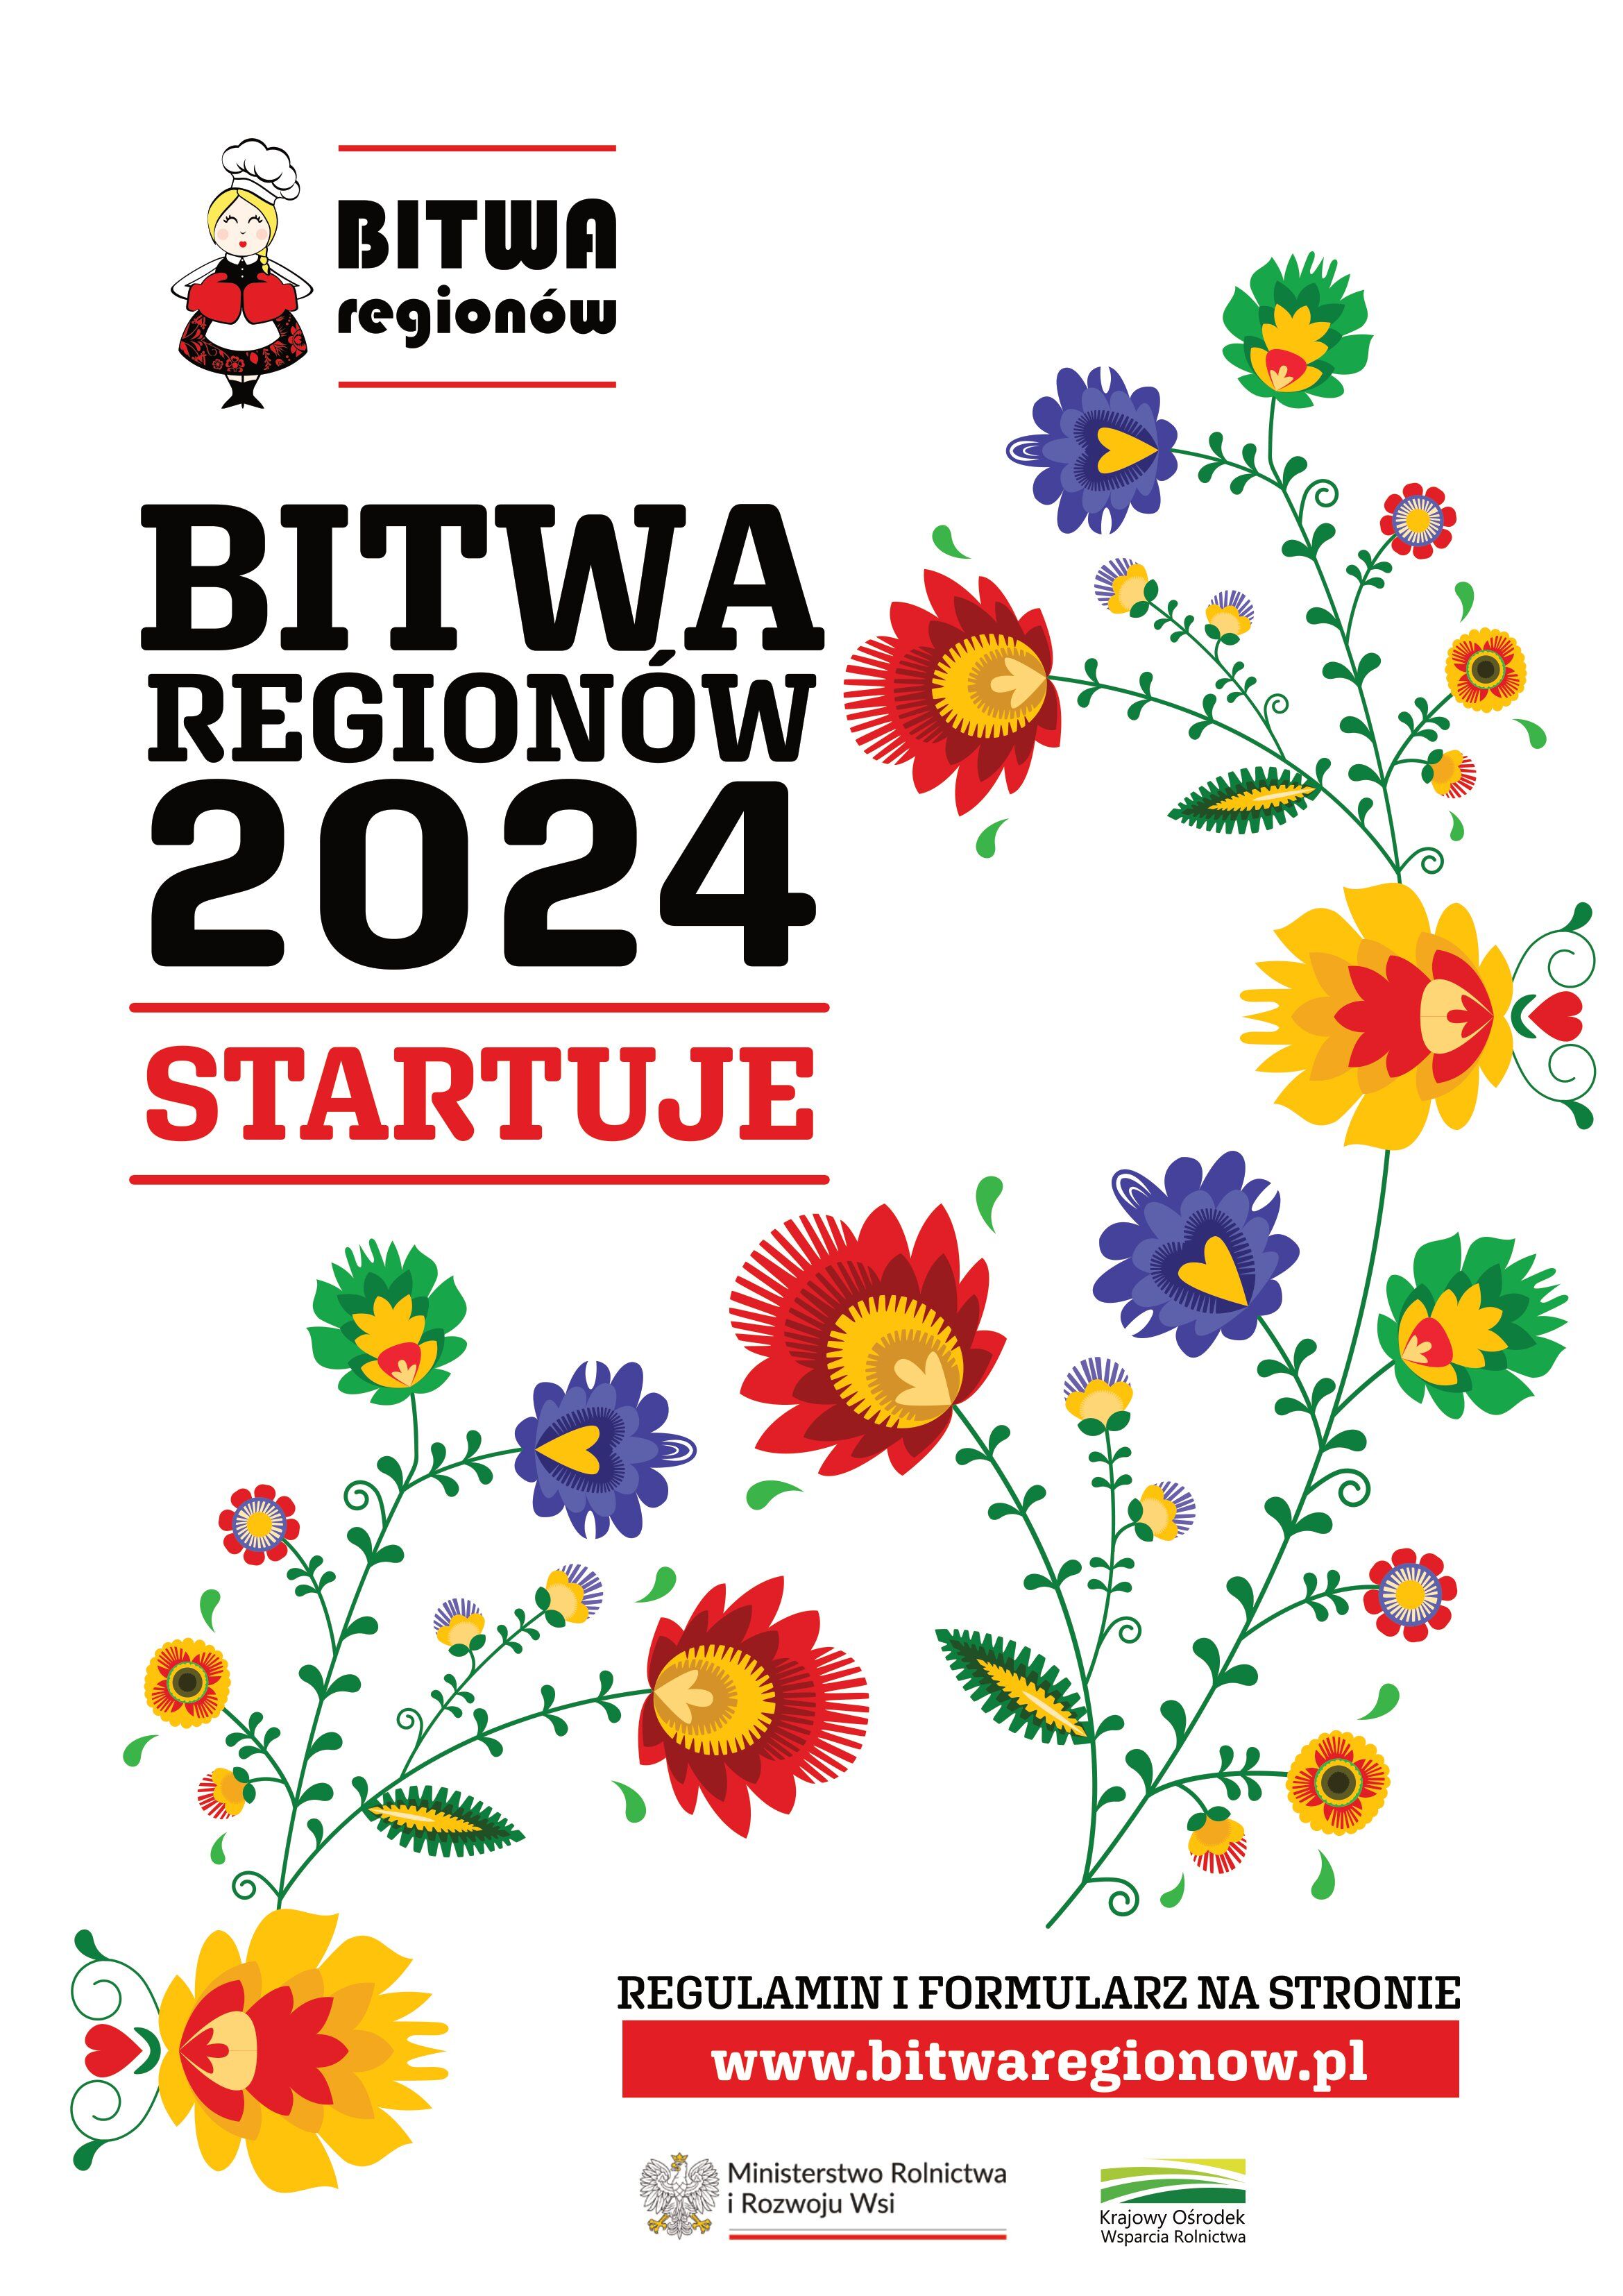 Plakat "Bitwa Regionów 2024" z graficznymi kwiatami i kogutem. Informacja o rozpoczęciu wydarzenia, wezwanie do rejestrowania się online.